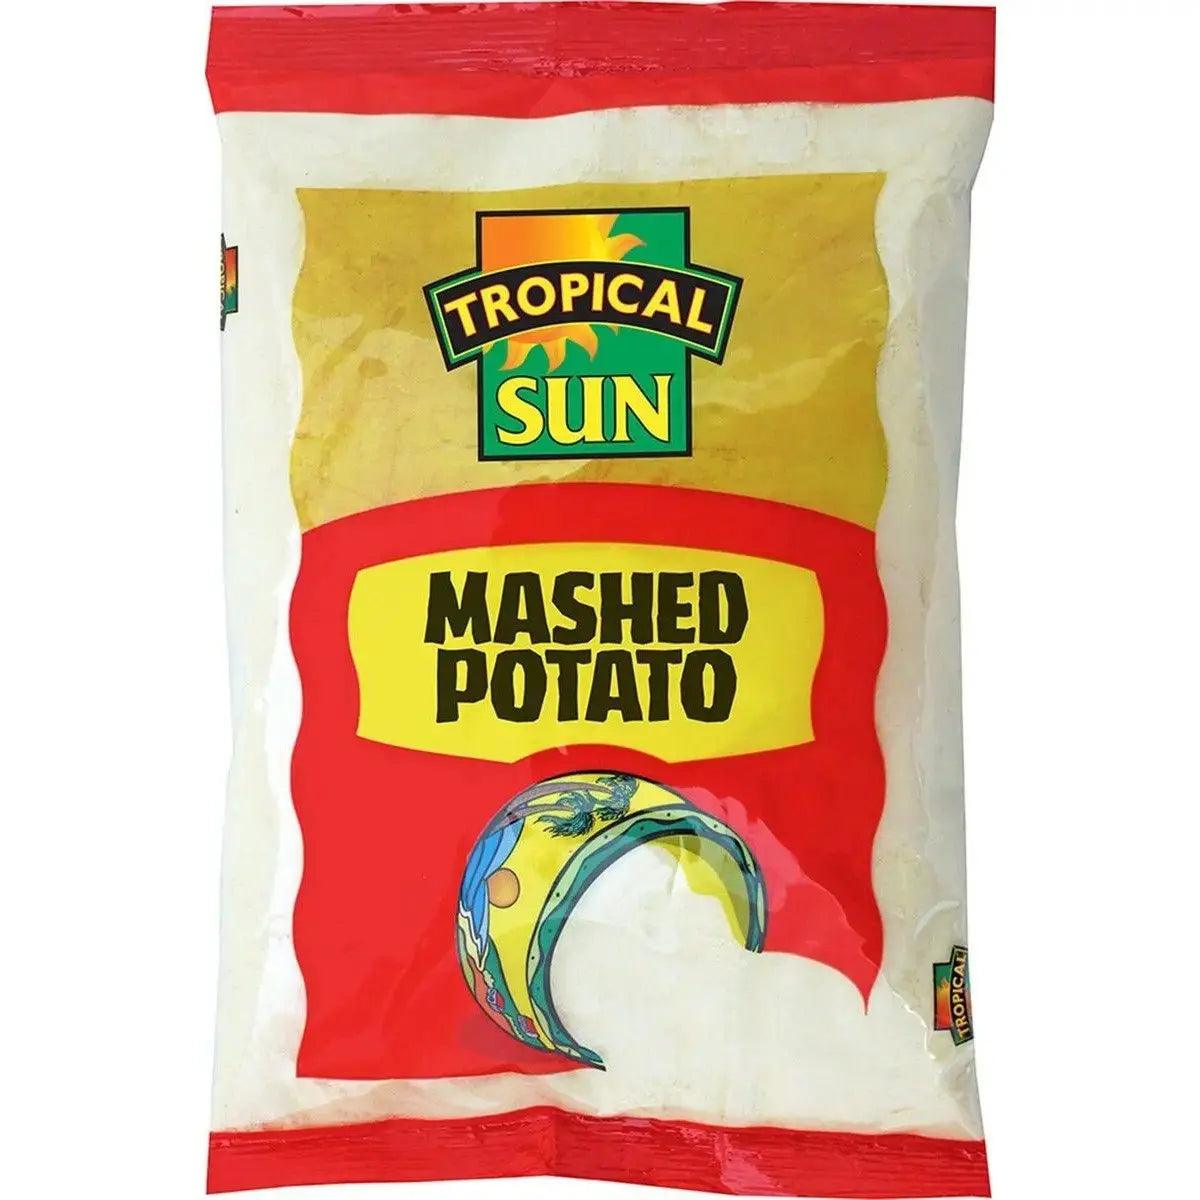 Mashed Potato Powder Flour 1.5KG for vegetarians - Honesty Sales U.K